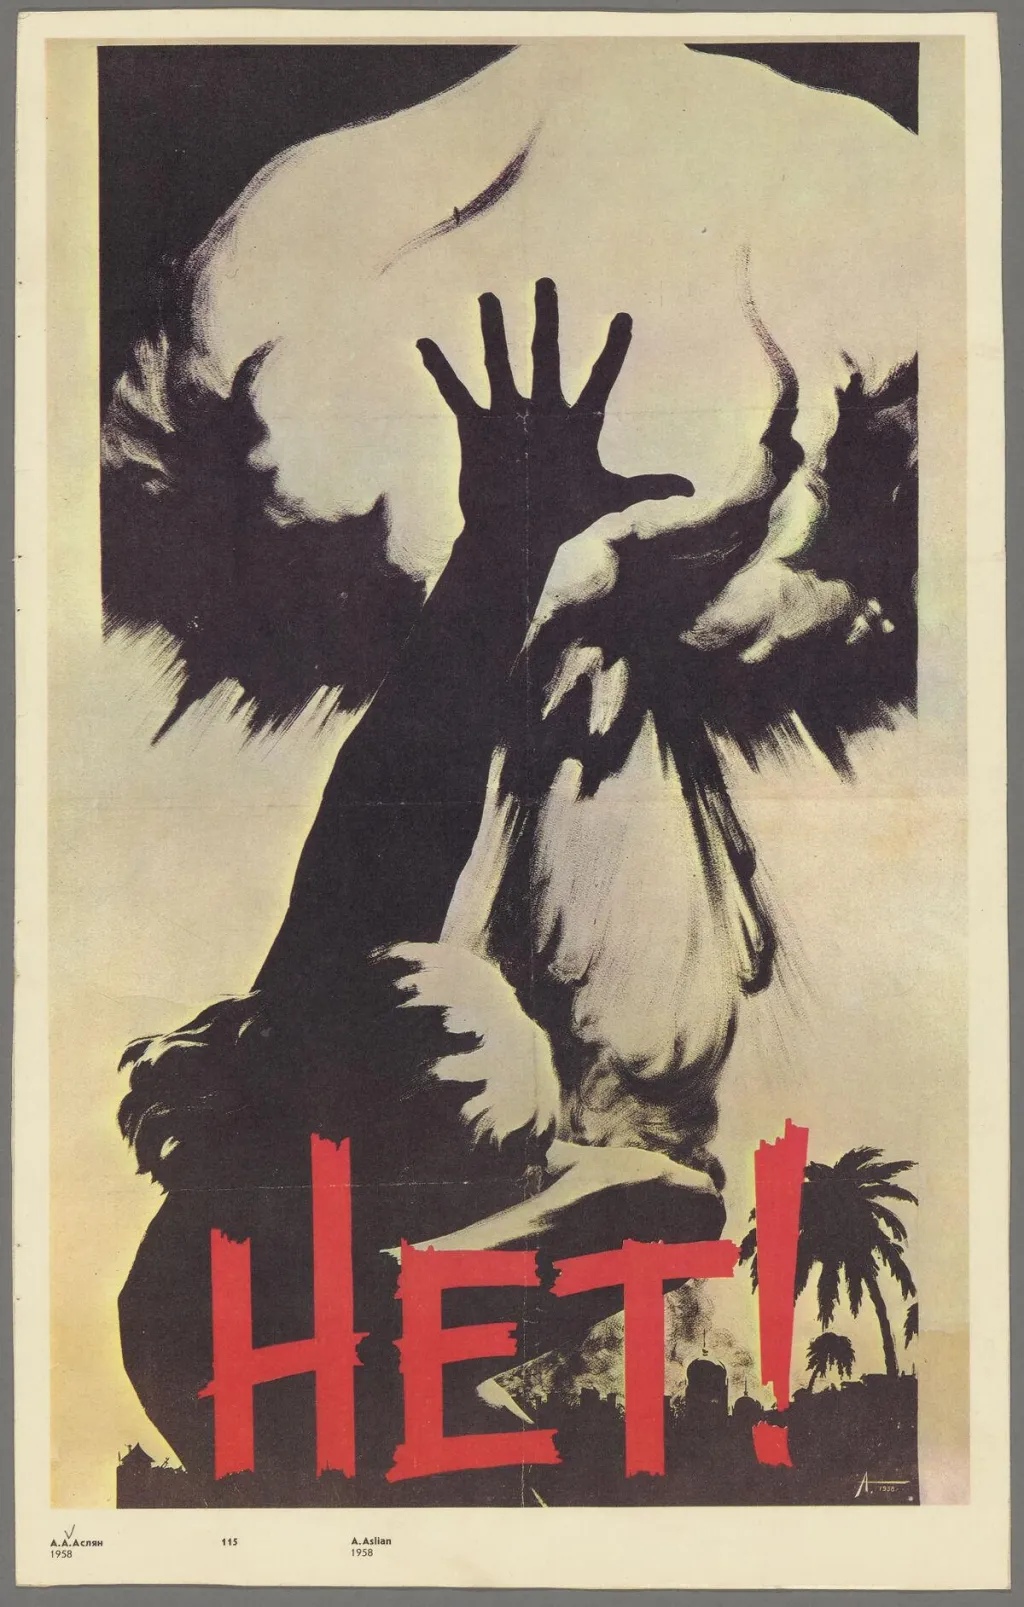 "Ne!" je slavný plakát z roku 1960, který protestuje proti americkému jadernému zbrojení